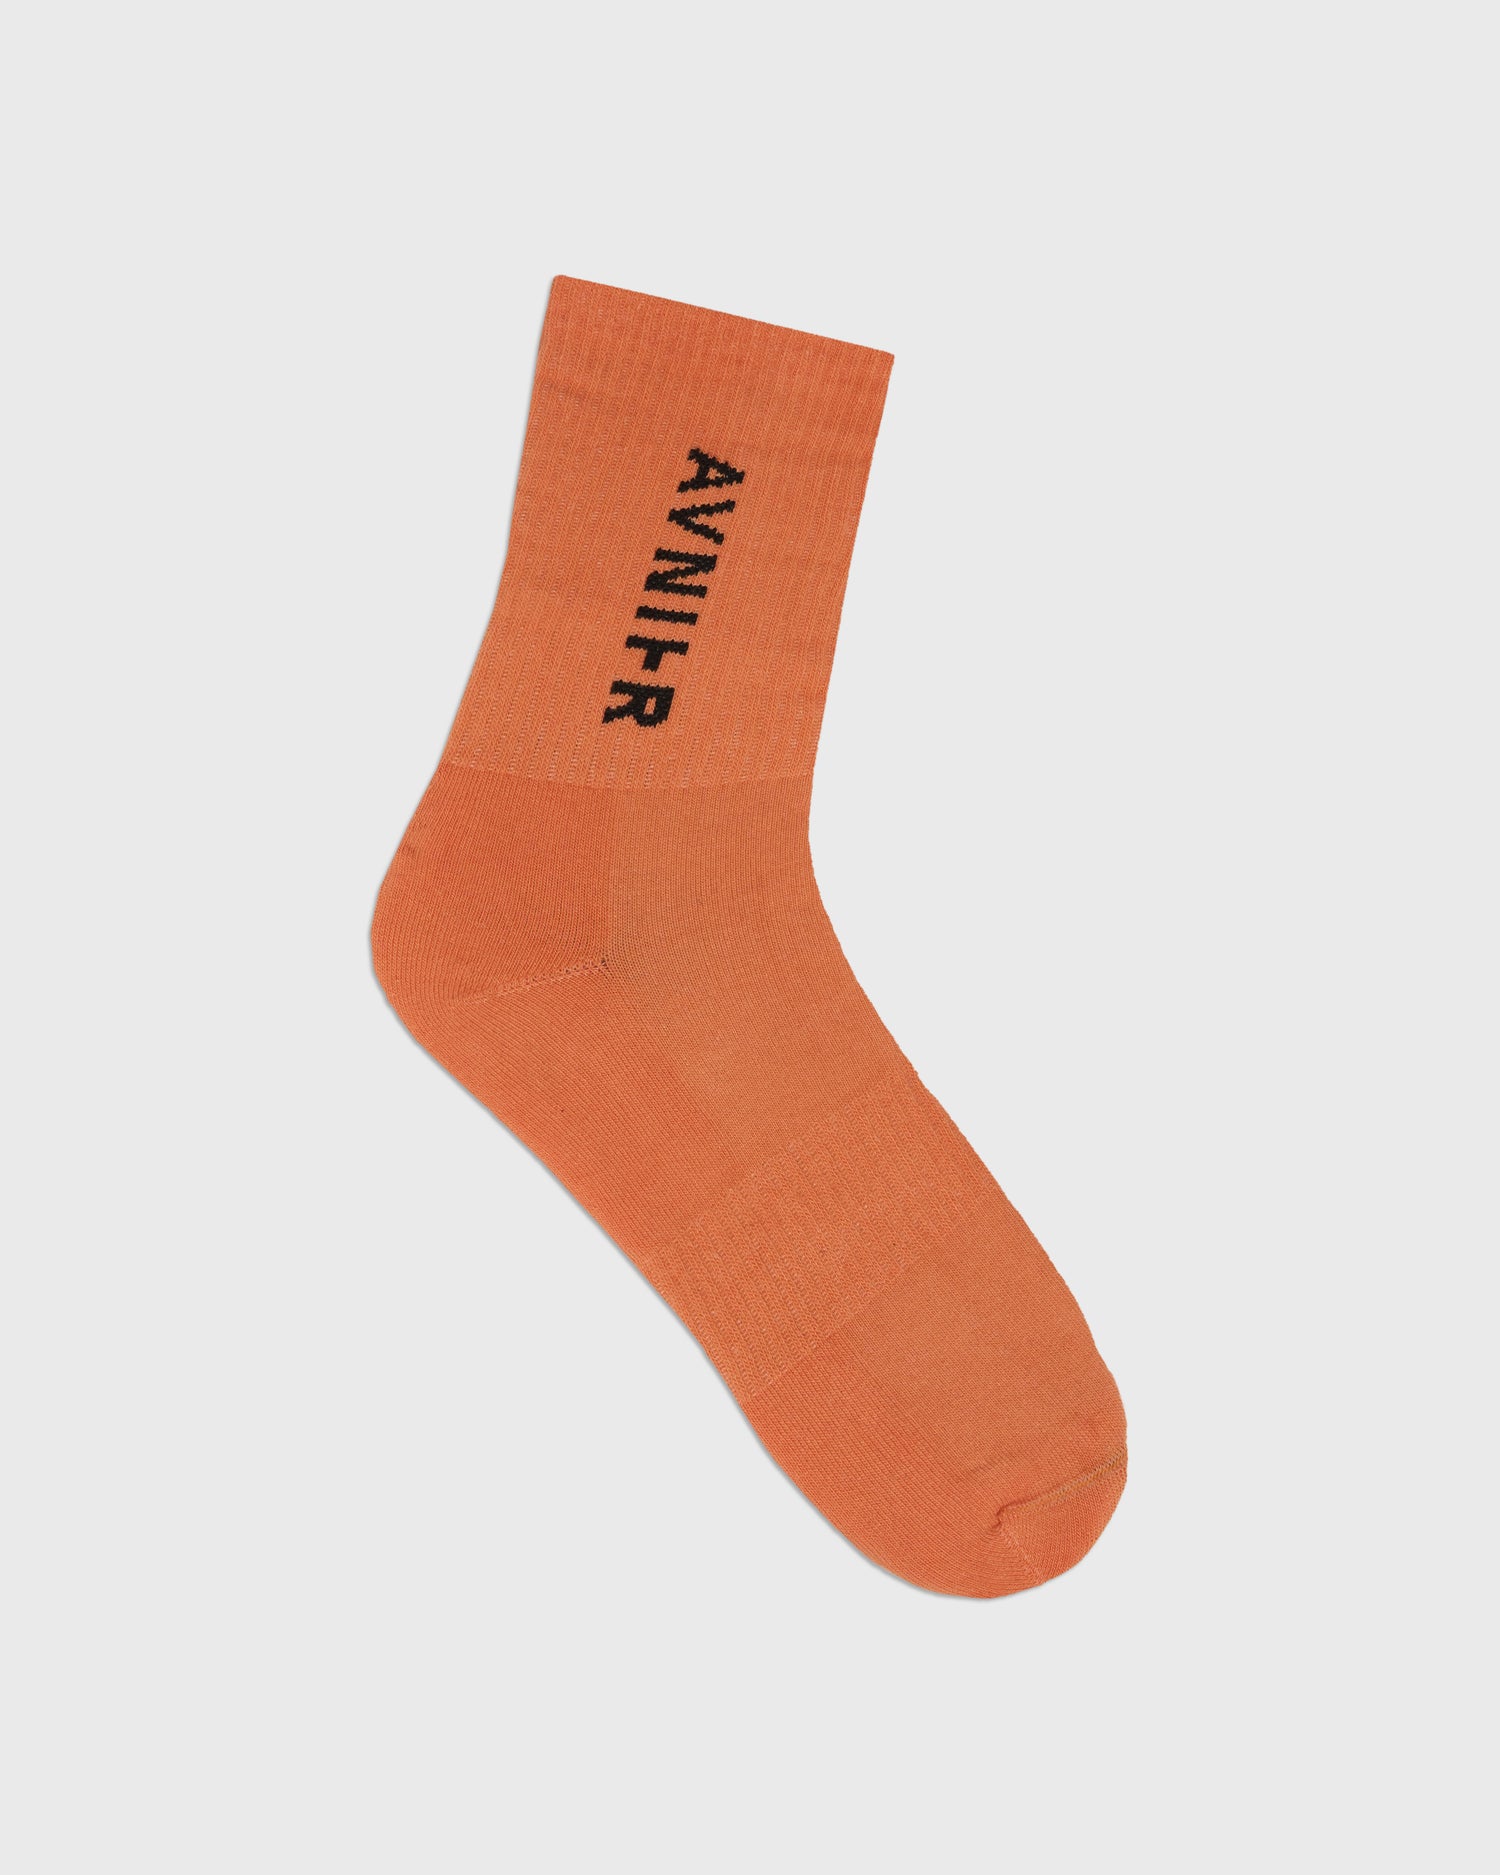 chaussettes-loop-vertical-orange-avnier-vetement-orelsan-1-packshot-face - orange vibrant